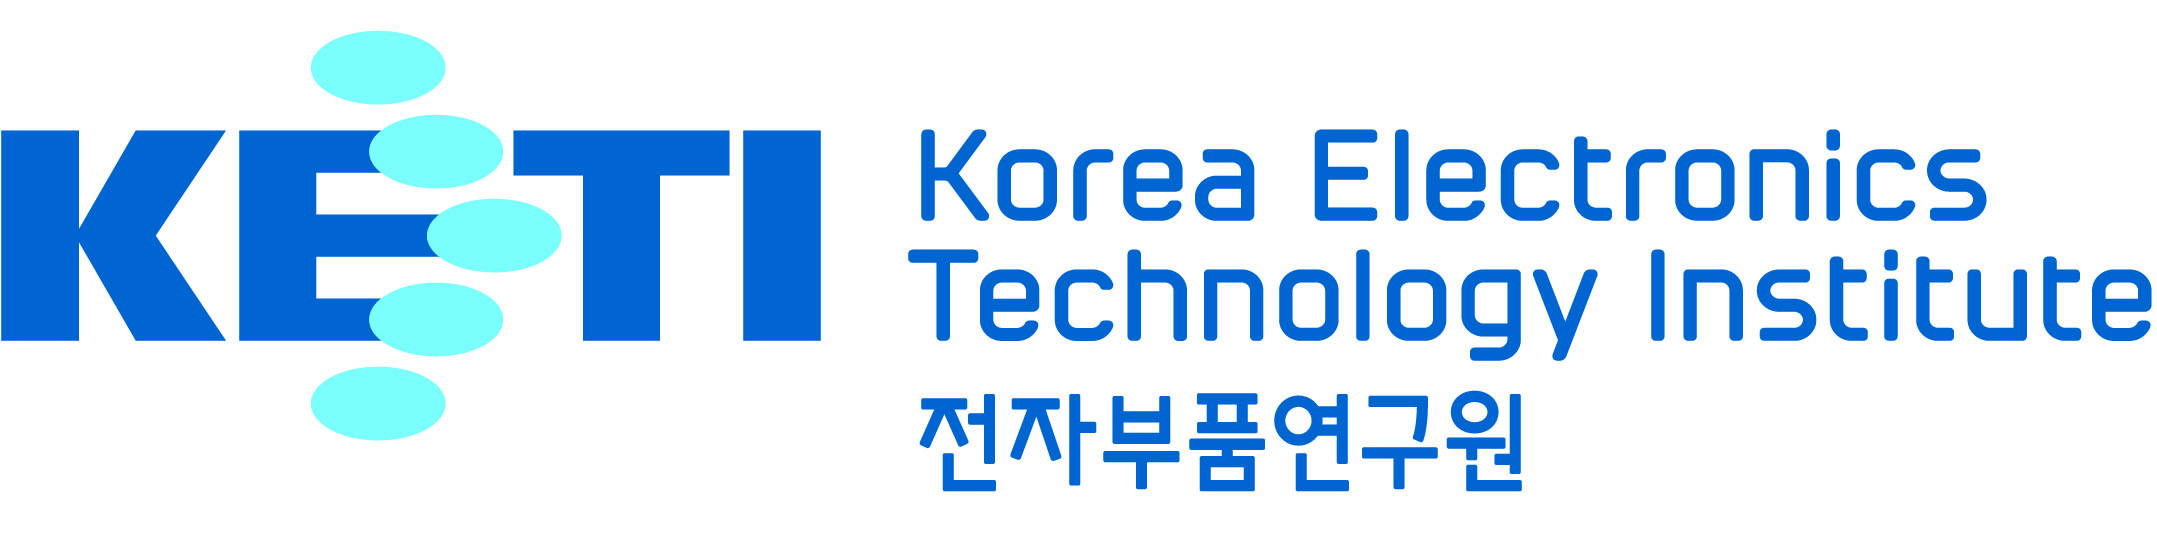 한국전자기술연구원<br />KETI(Korea Electronics Technology Institute) LOGO